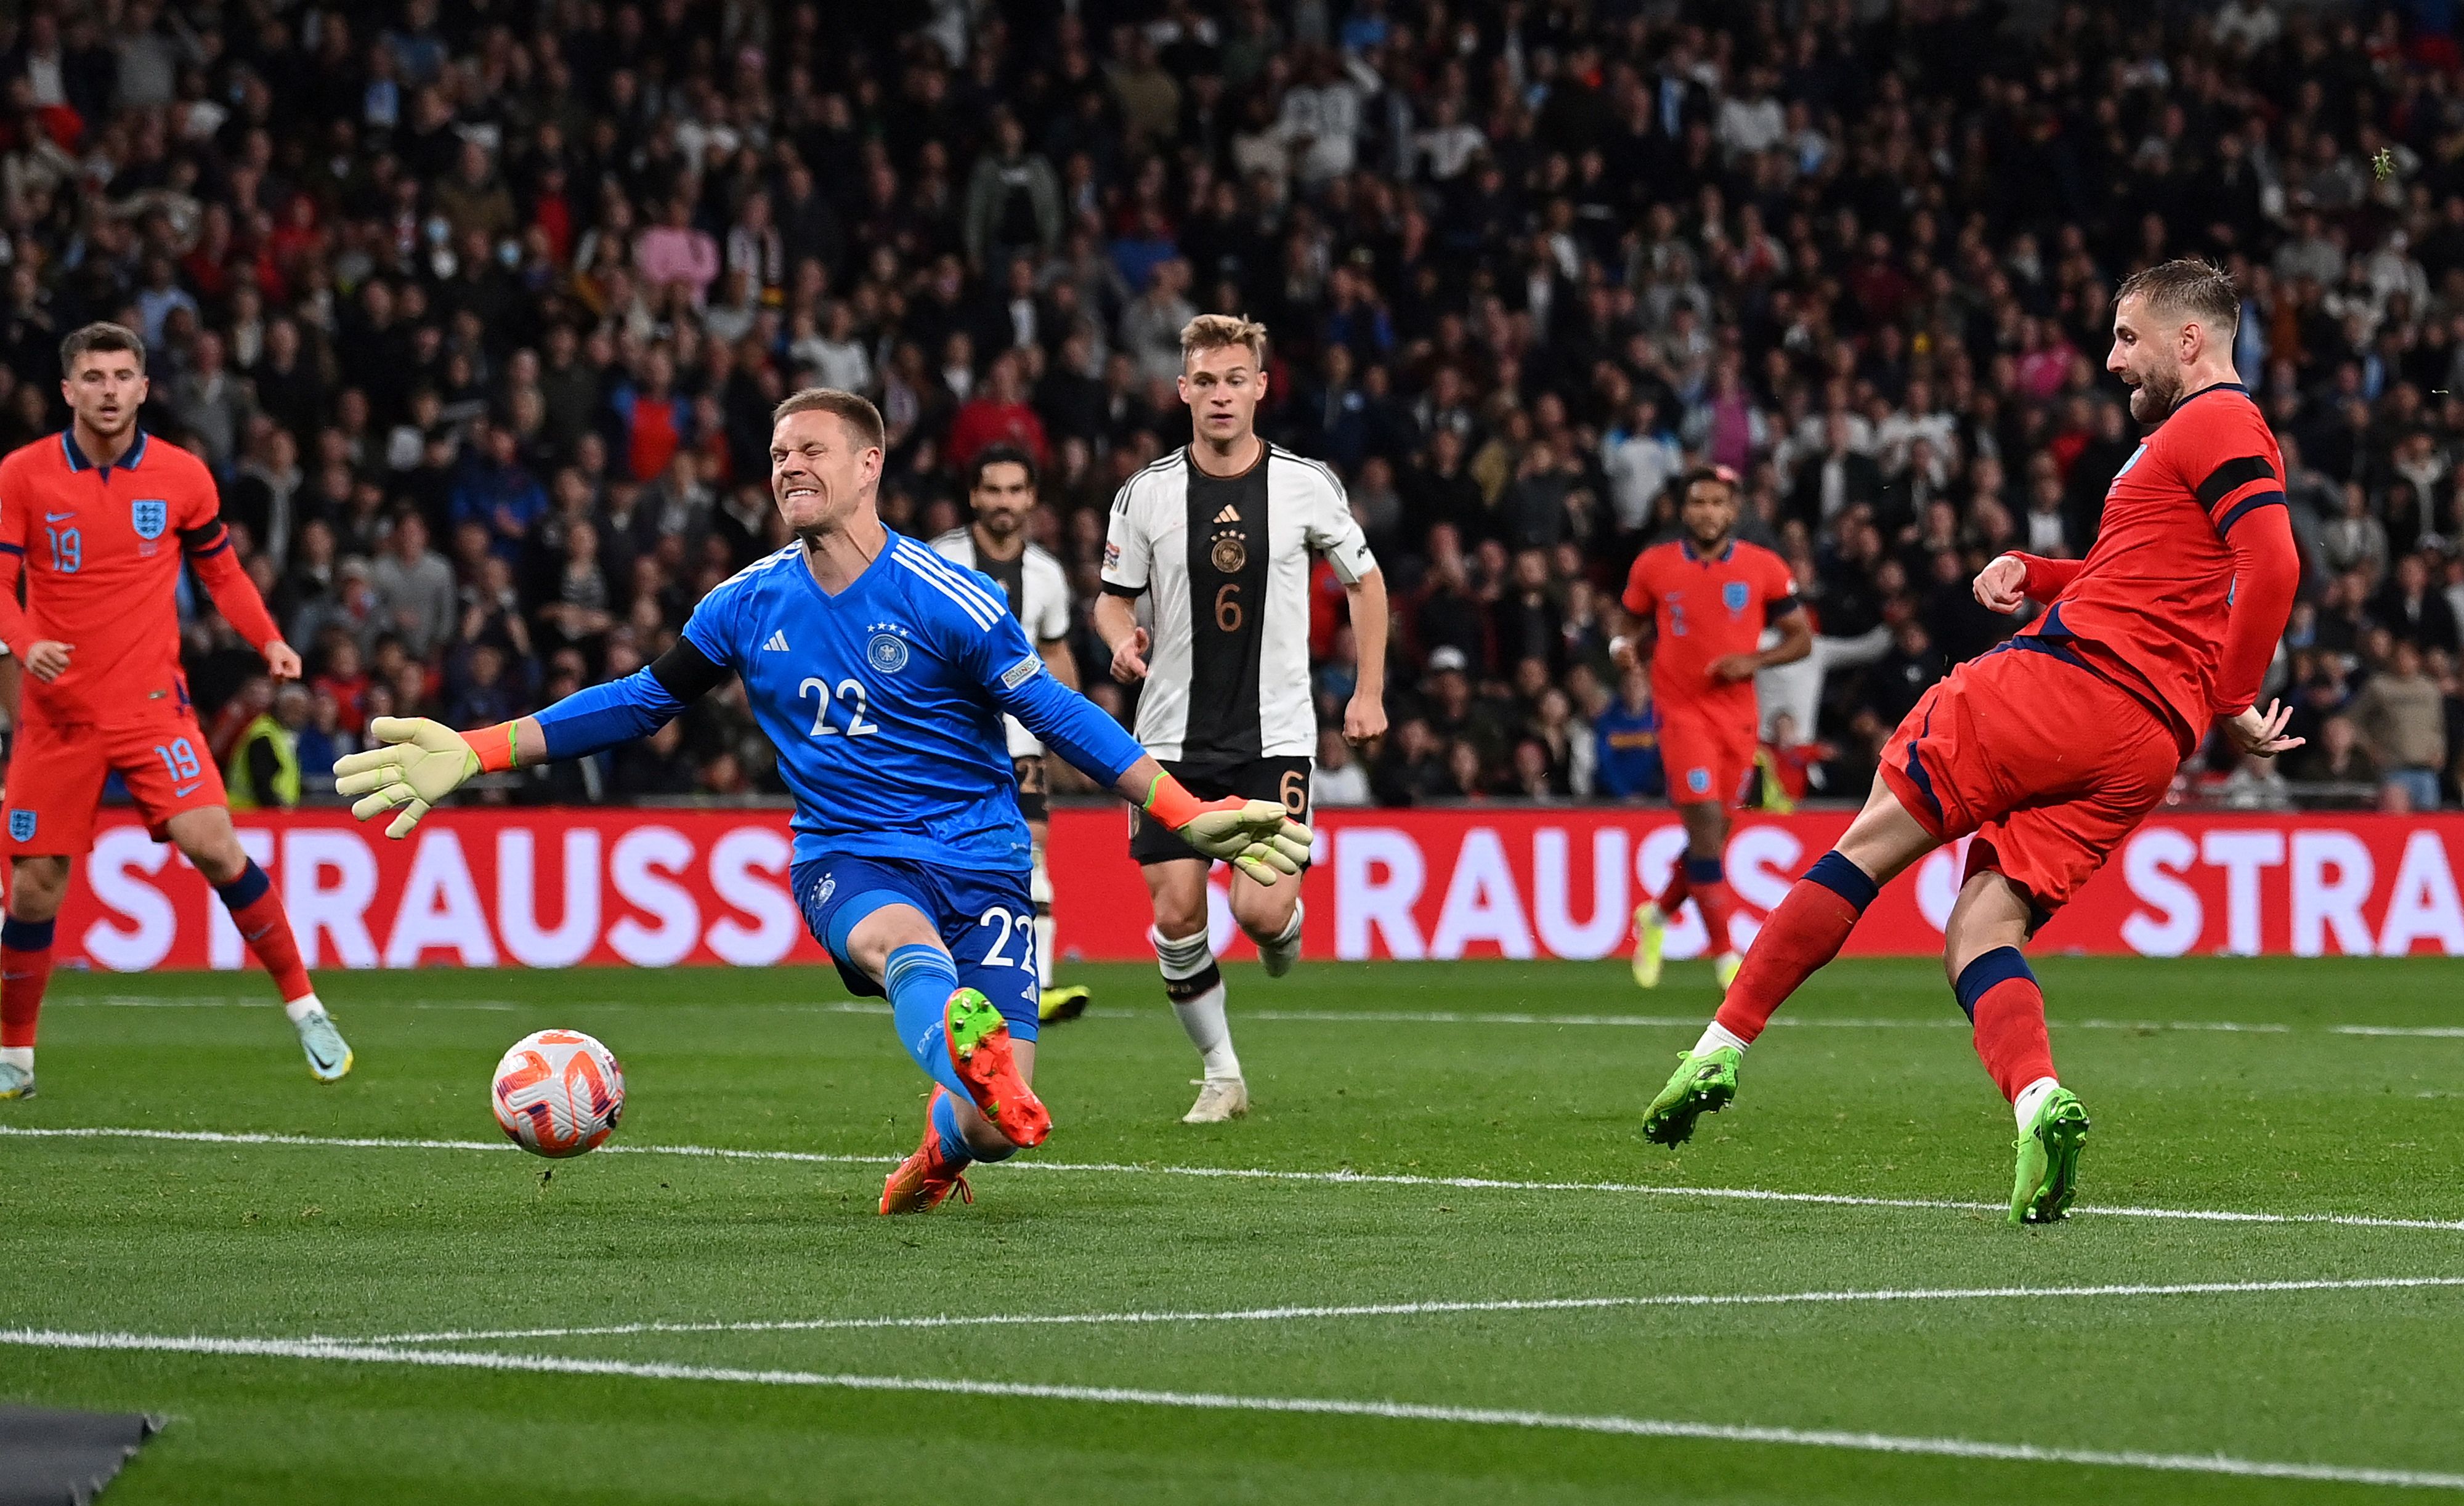 Luke Shaw anotó el gol con el que Inglaterra empezó su remontada que al final terminó en empate 3-3 frente a Alemania. (Foto Prensa Libre: AFP)